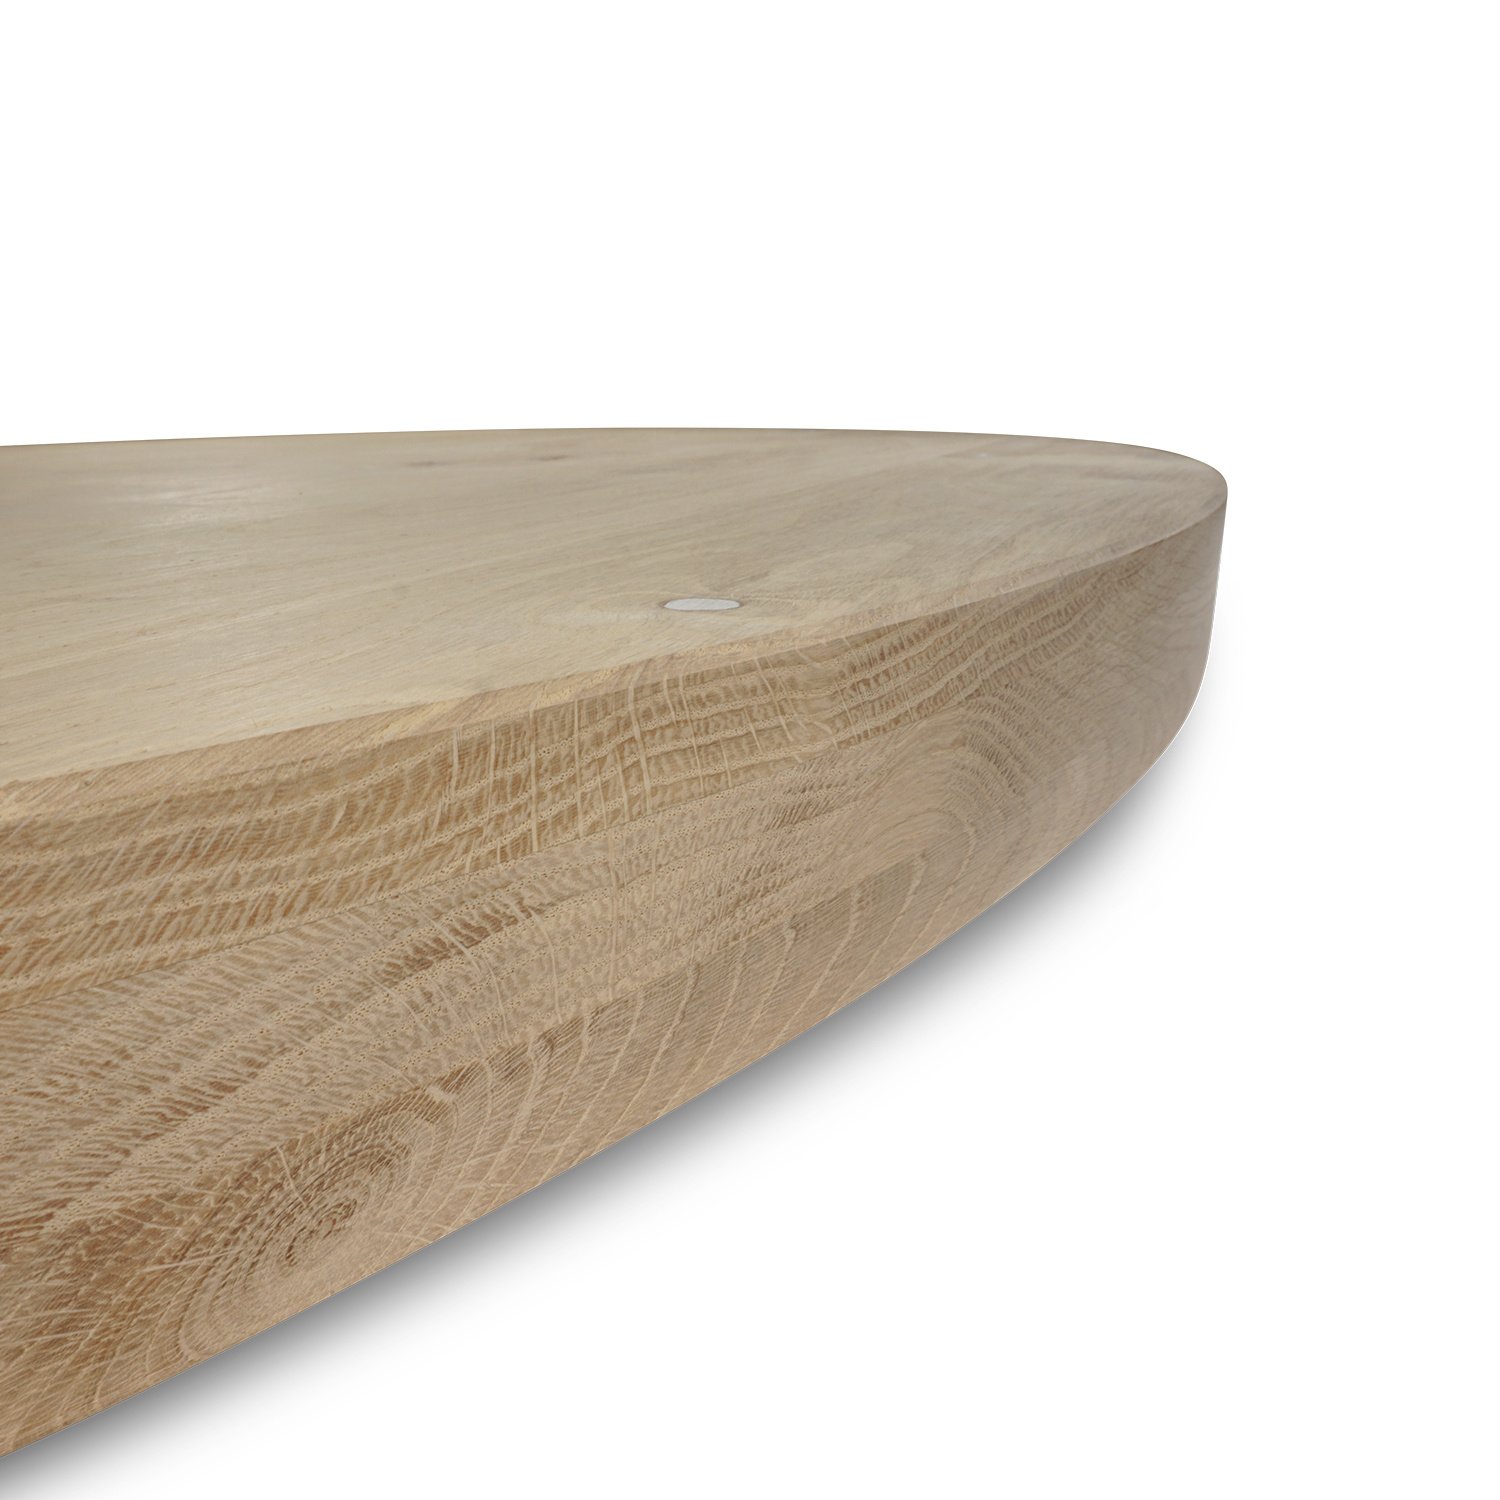  Tischplatte Eiche rund nach Maß - 6 cm dick (3-lagig) - Eichenholz rustikal - Durchmesser: 35 - 125 cm - Eiche Tischplatte rund - aufgedoppelt - verleimt & künstlich getrocknet (HF 8-12%)